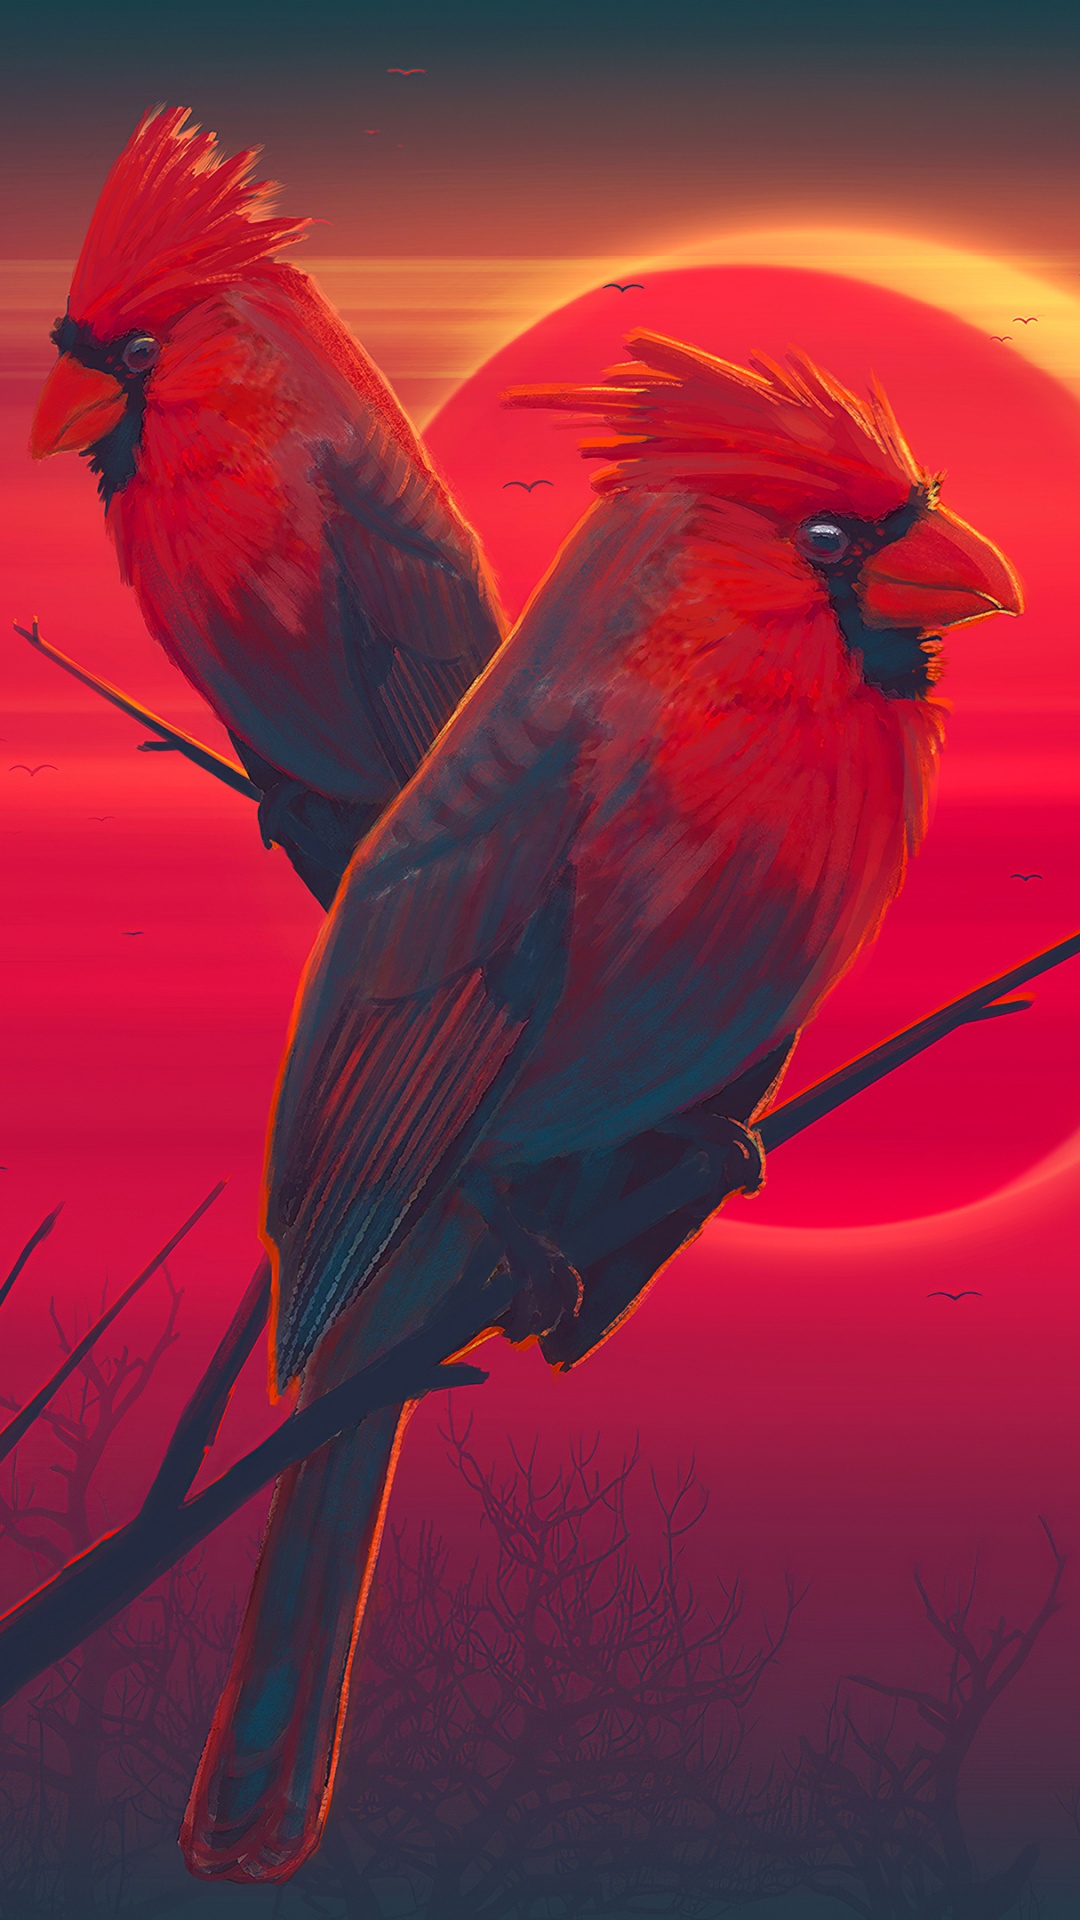 Pájaro Rojo en Palo Marrón. Wallpaper in 1080x1920 Resolution